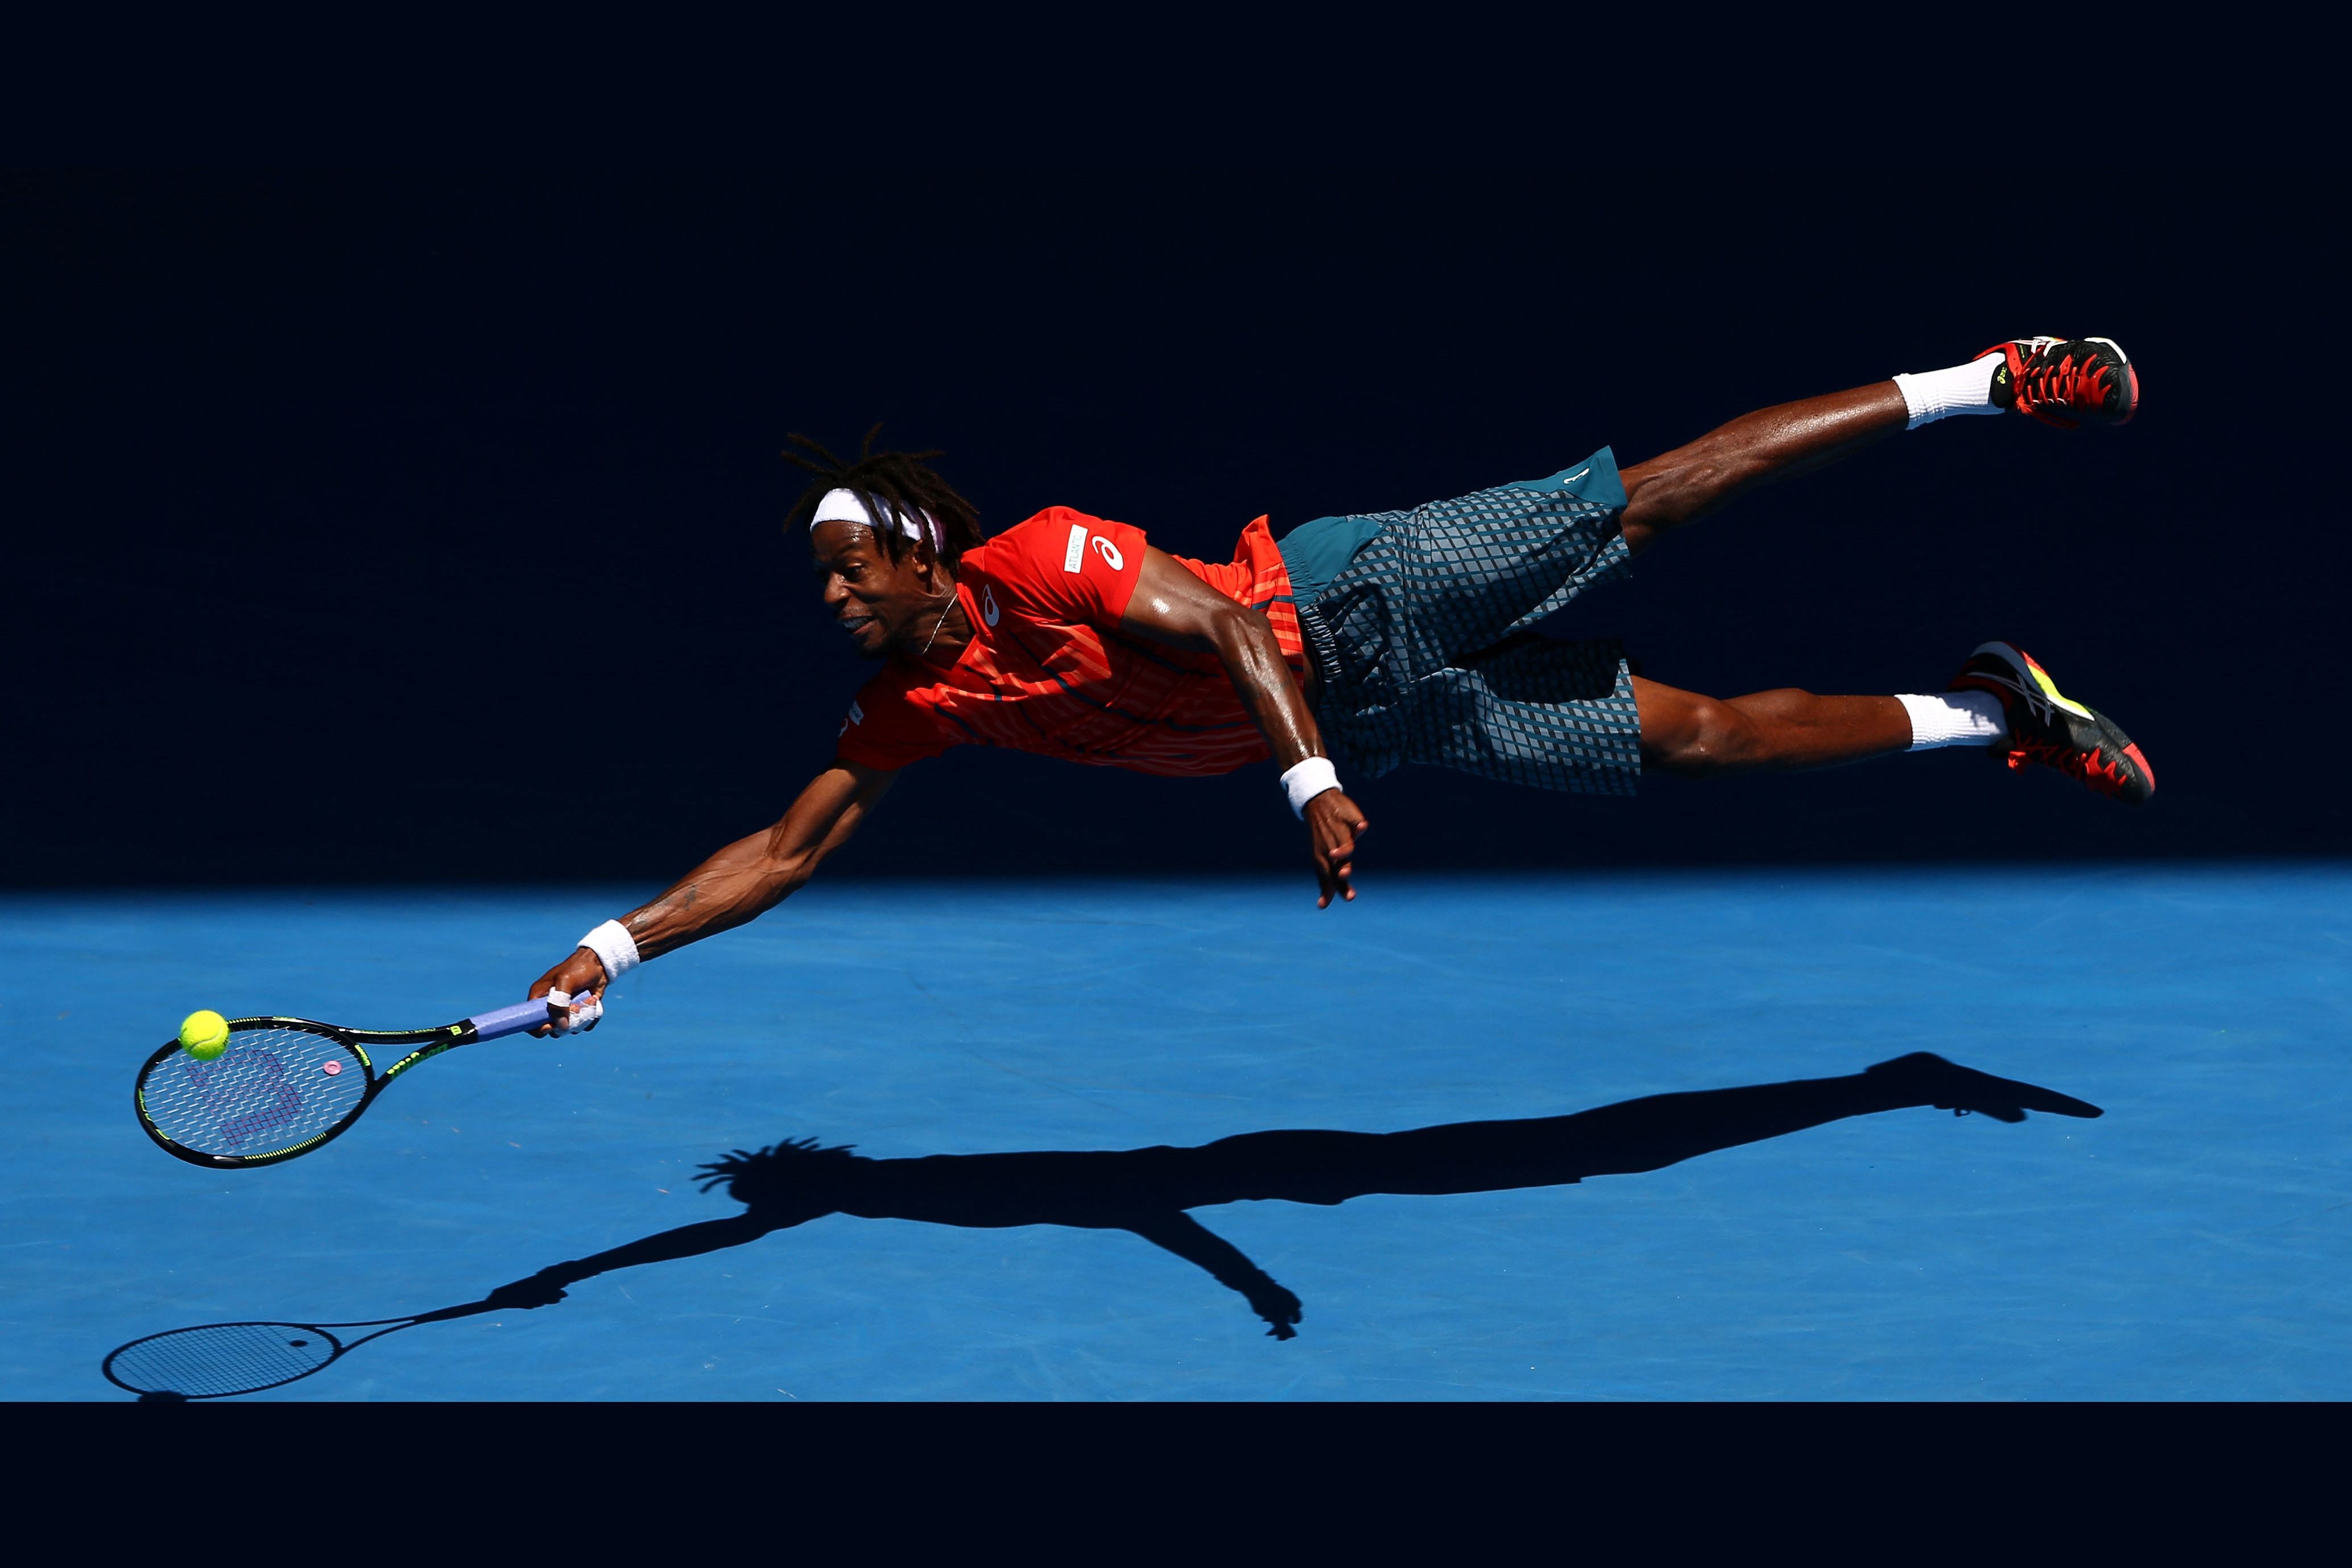 Атакующий теннис. Гаэль Монфис. Гаэль Монфис французский теннисист. Теннисист в прыжке. Спортсмен картинка.